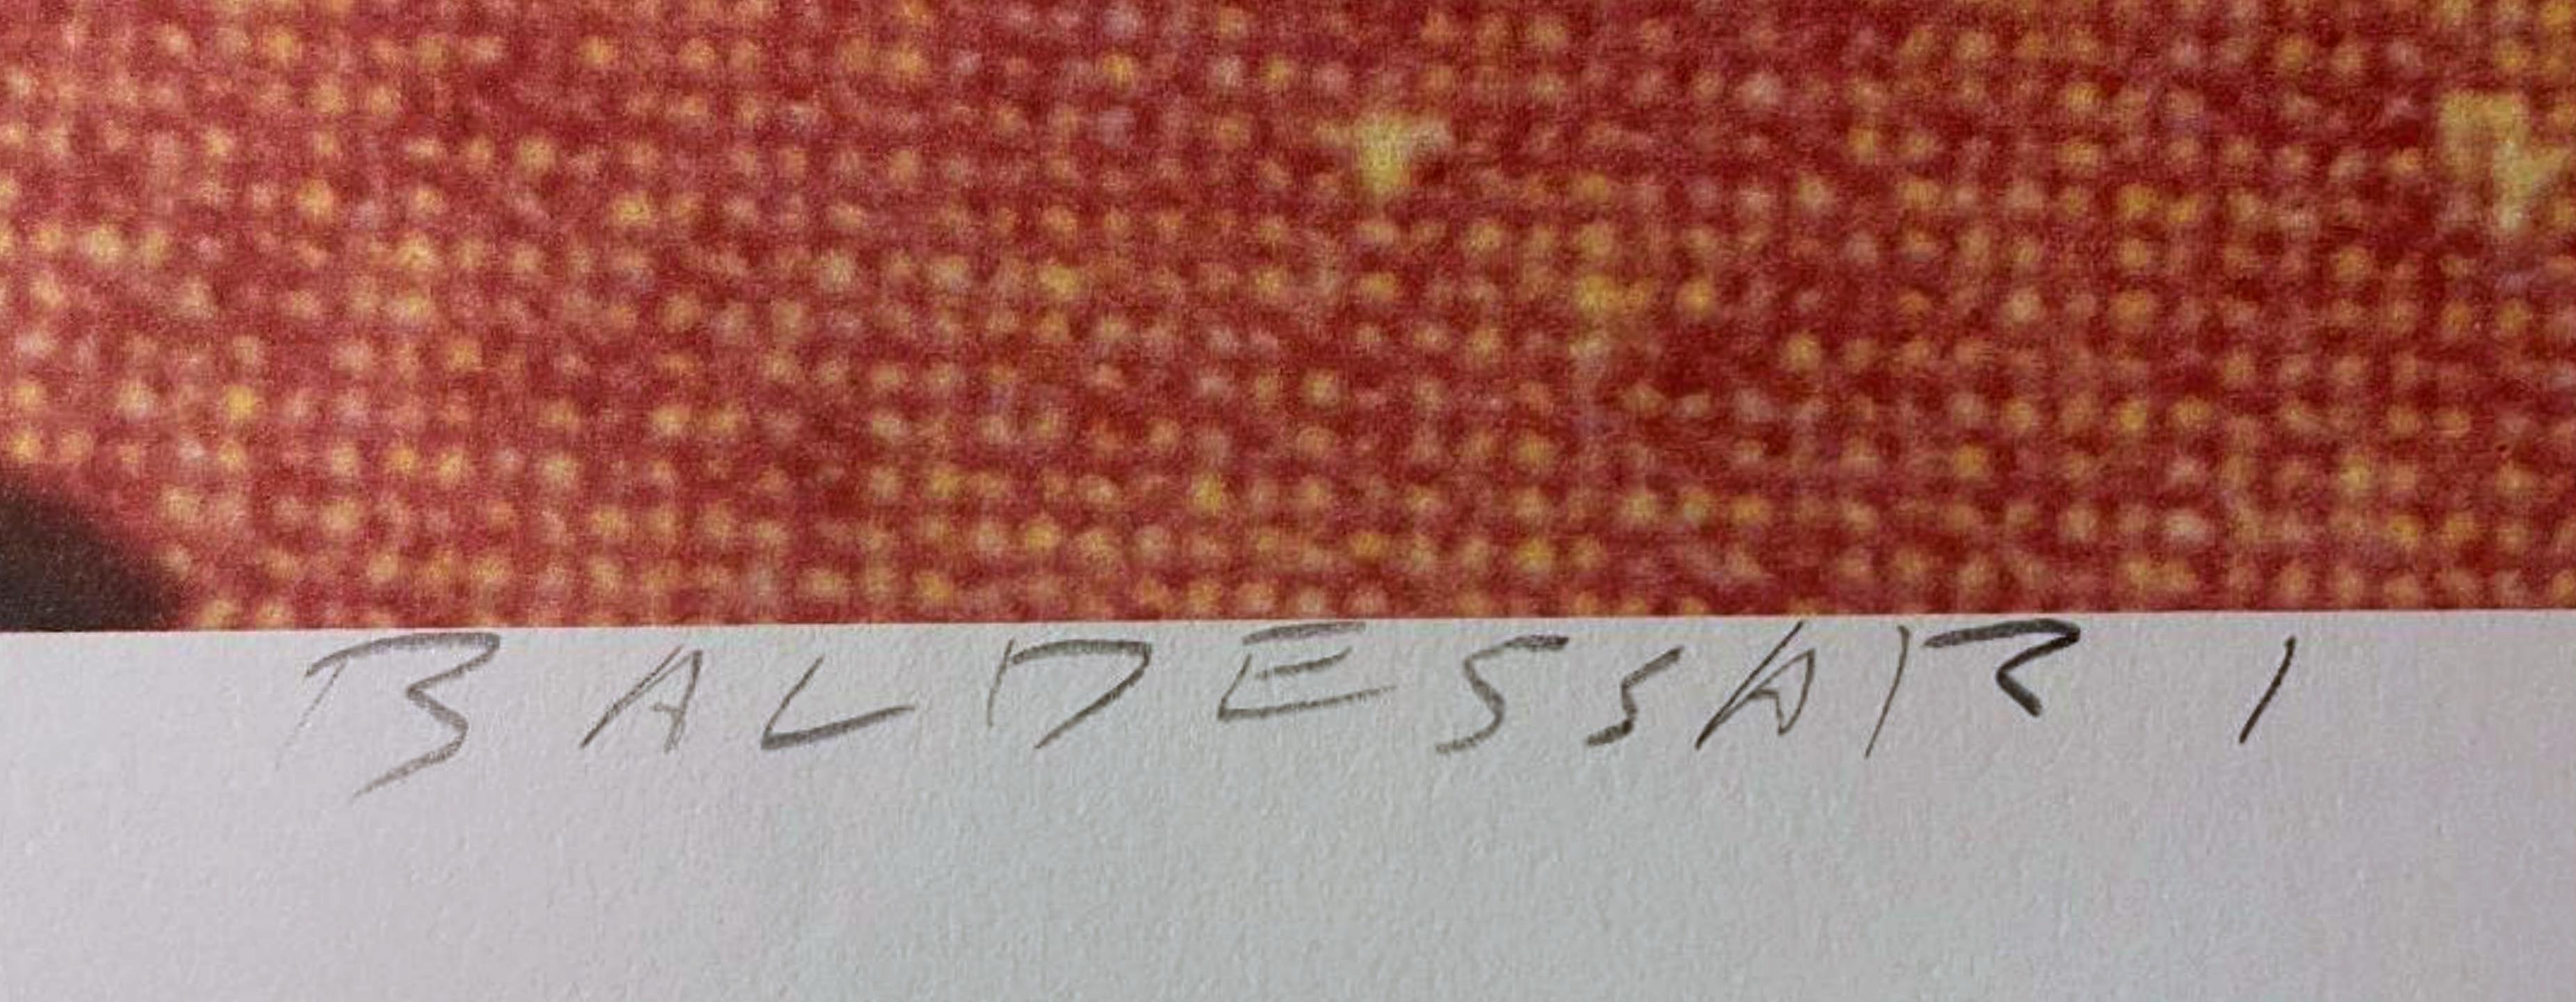 John Baldessari
Die Sprinter, 1982
Limitierte Auflage einer Offsetlithografie auf Parsons-Diplom-Papier
Auf der Vorderseite in Graphit signiert. Begleitet von einem Echtheitszertifikat des Verlags 
36 x 24 Zoll
Ungerahmt
Begleitet von einem